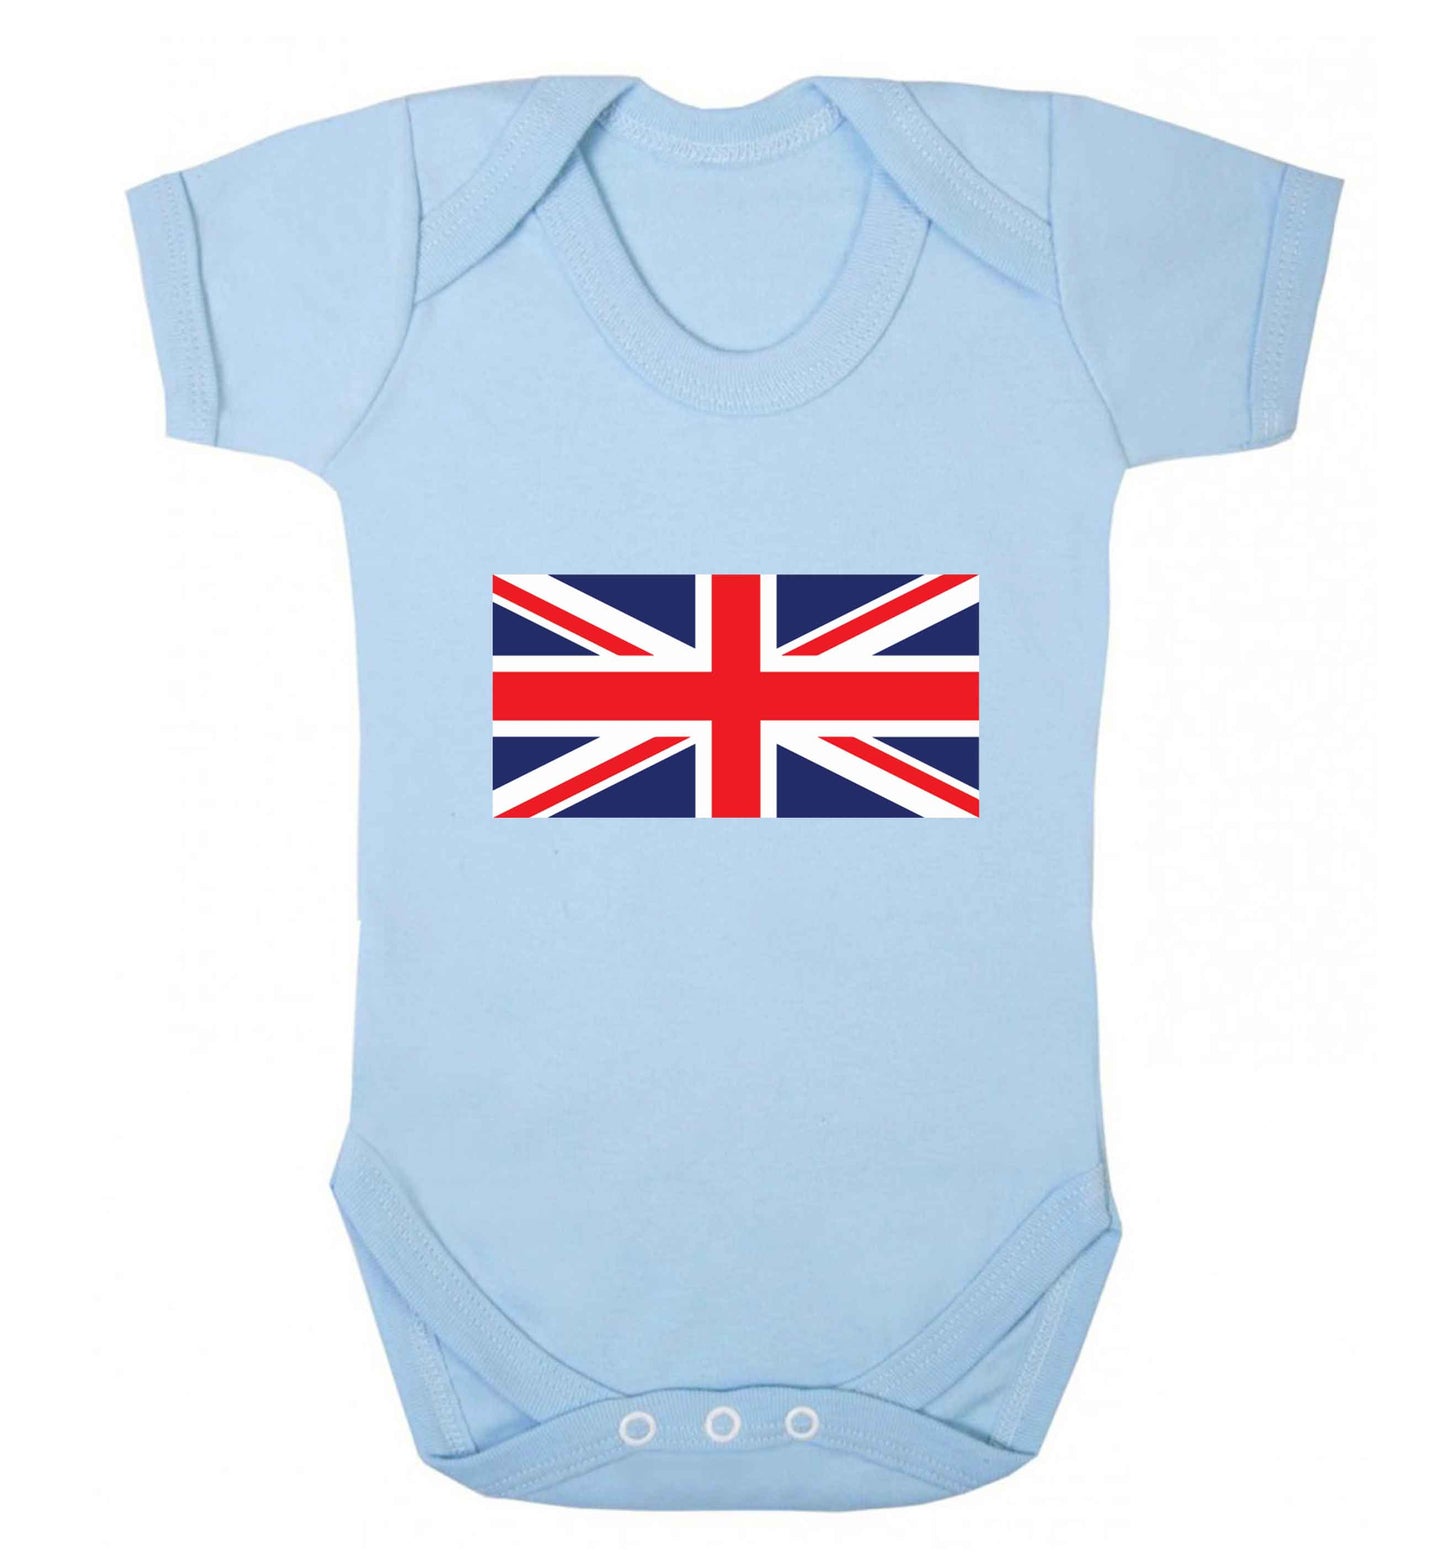 Union Jack baby vest pale blue 18-24 months